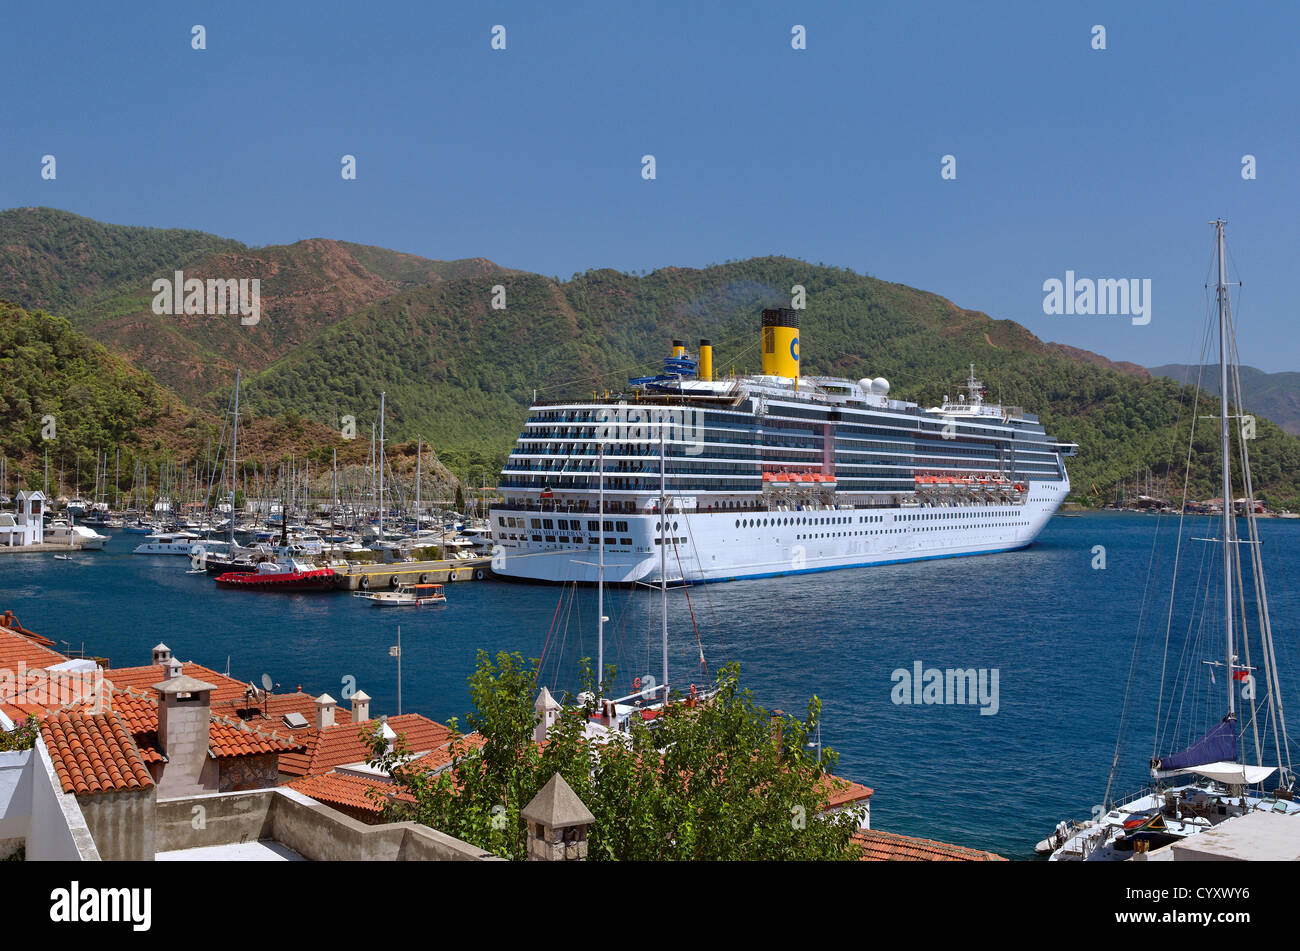 Marmaris Cruise Port, Muğla, Turquie, avec bateau de croisière "Costa Mediterranea" sur le quai Banque D'Images